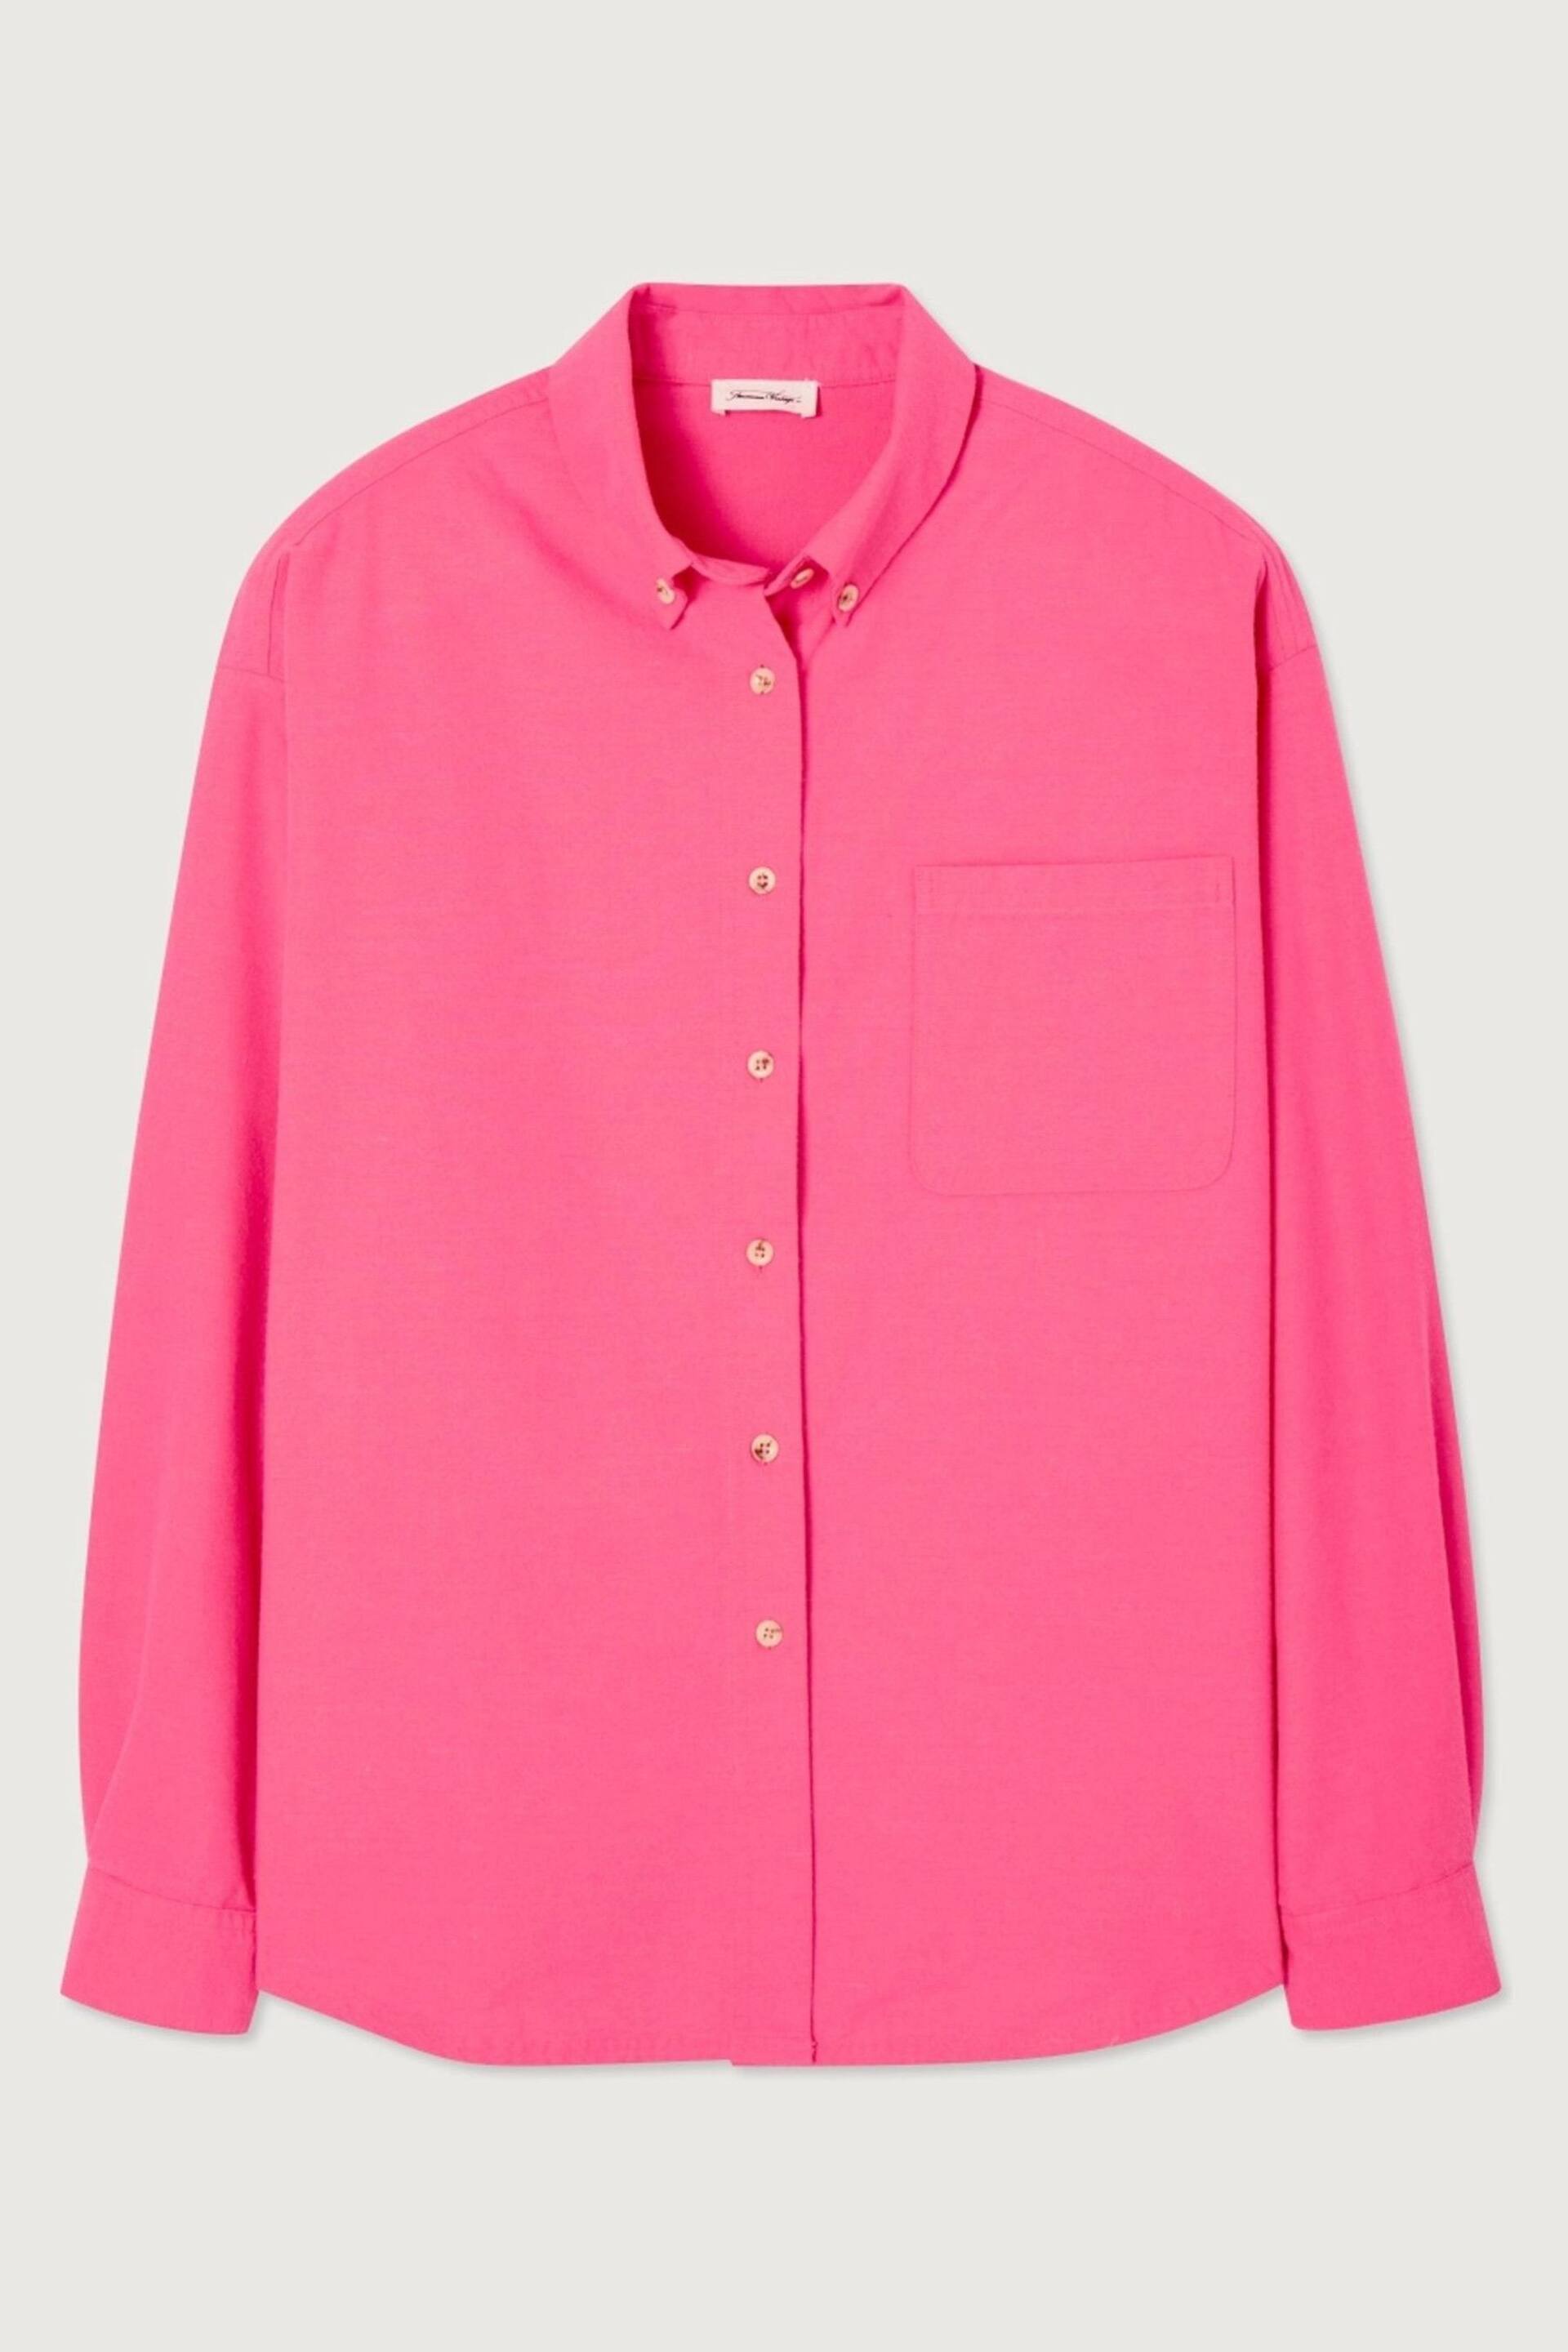 American Vintage Pink Dakota Shirt - Image 3 of 5